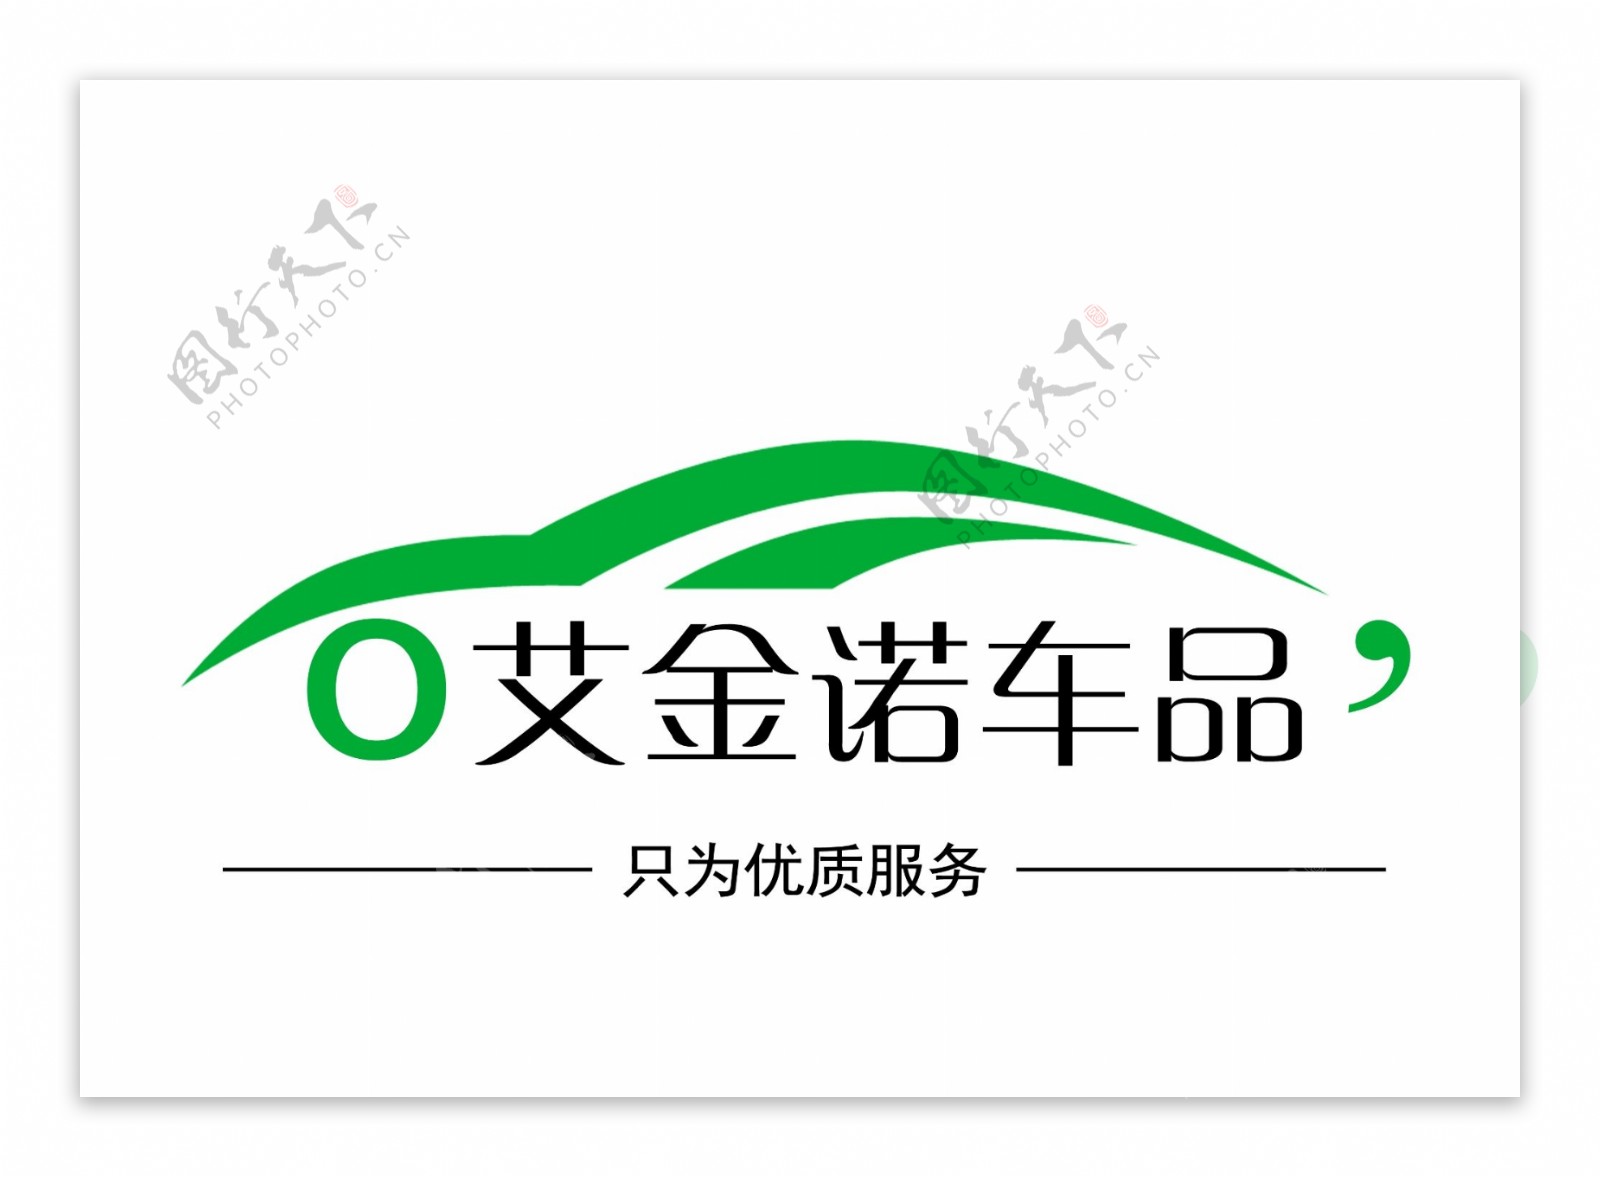 车品标志logo图片